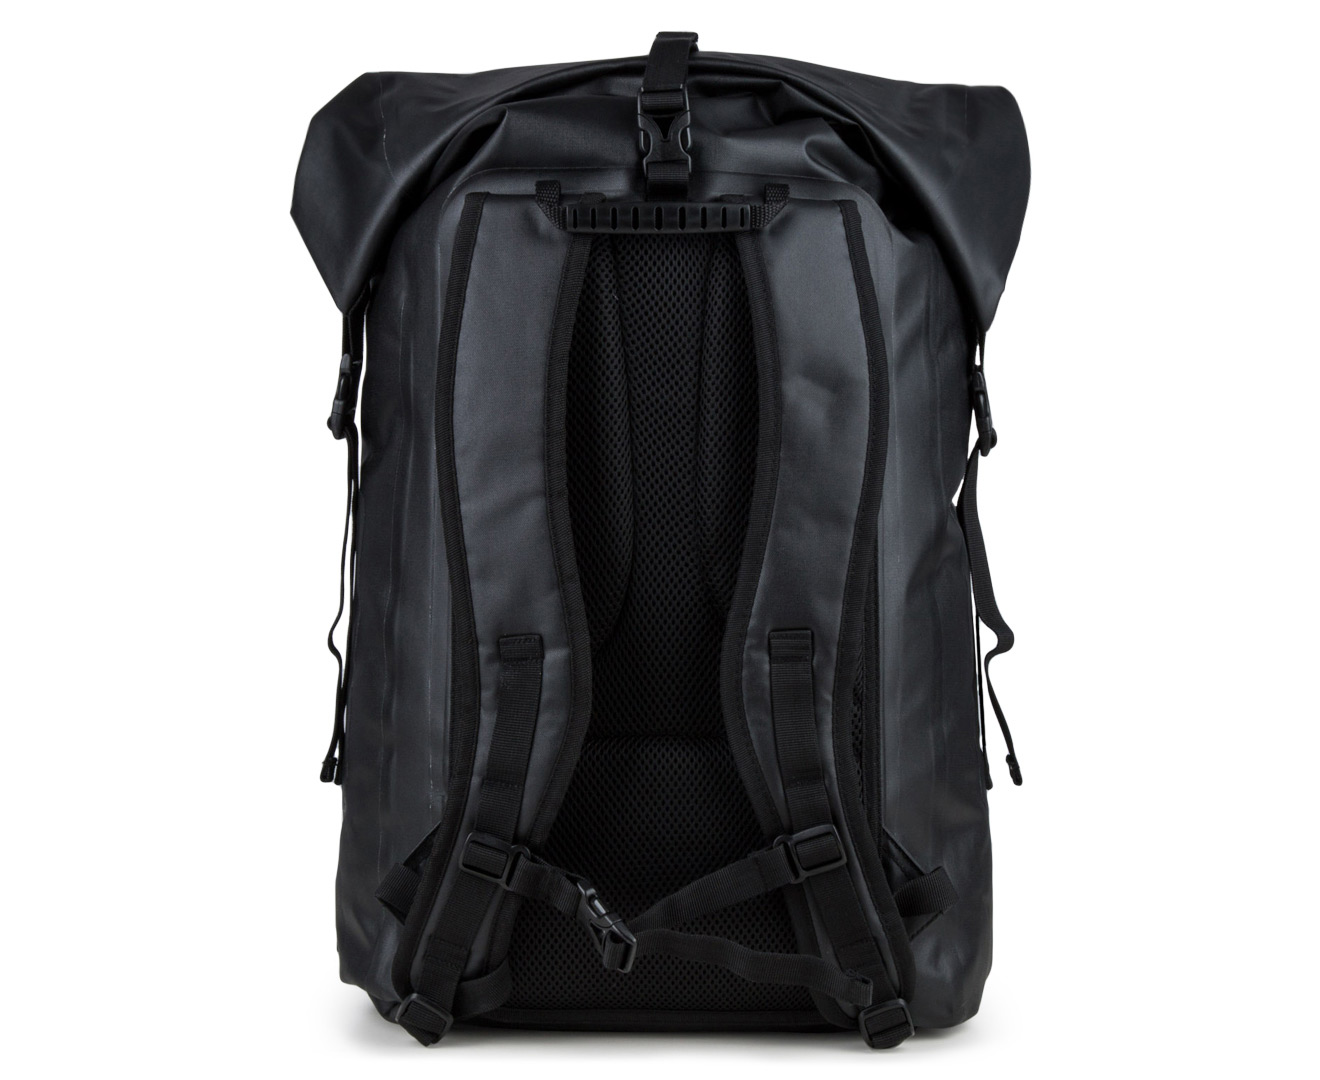 Caribee Trident Waterproof 32L Dry Bag - Black | eBay